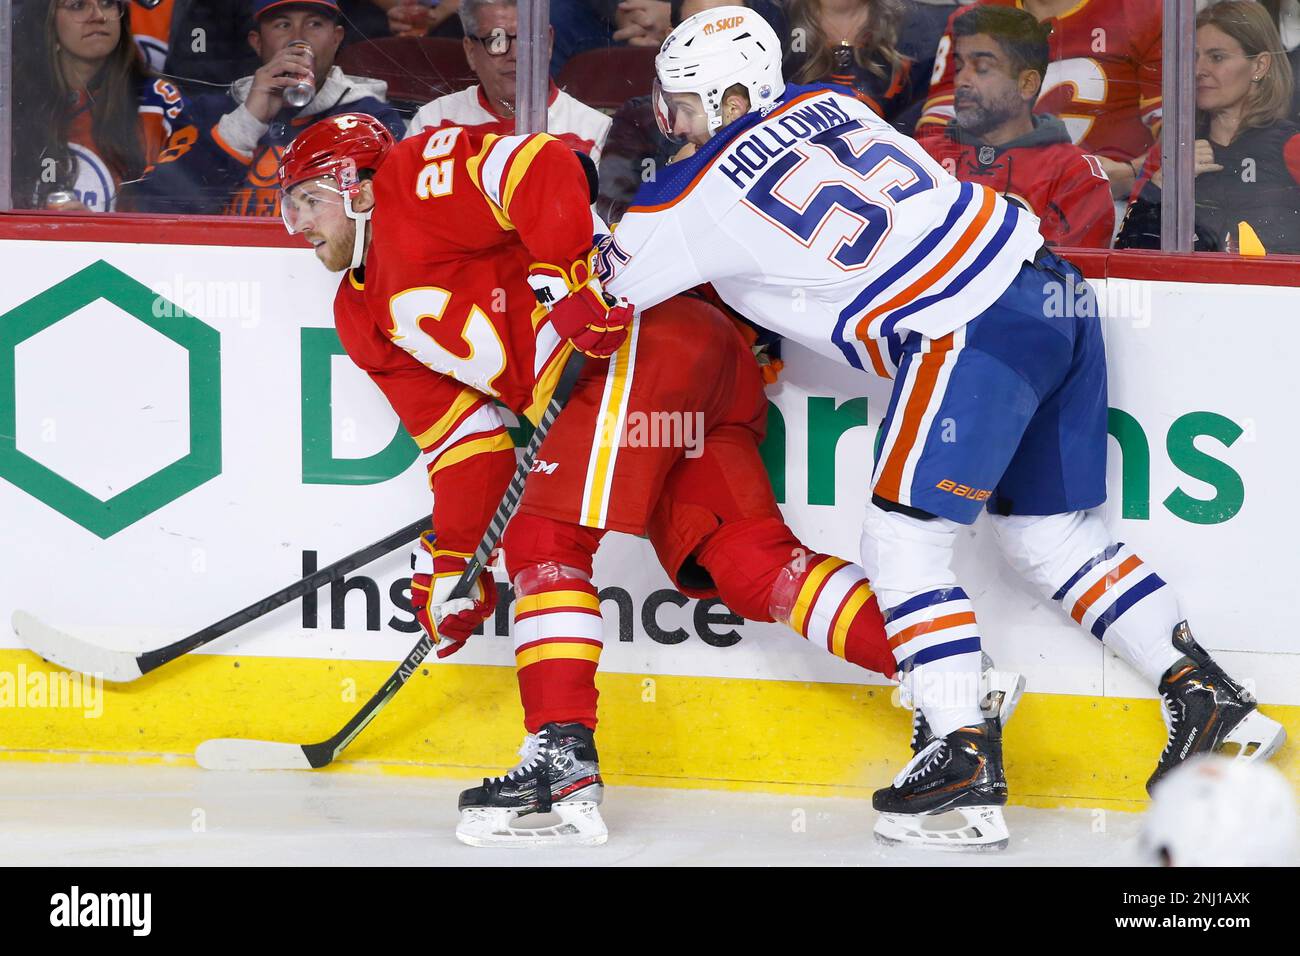 Calgary Flames - Edmonton Oilers - Oct 29, 2022